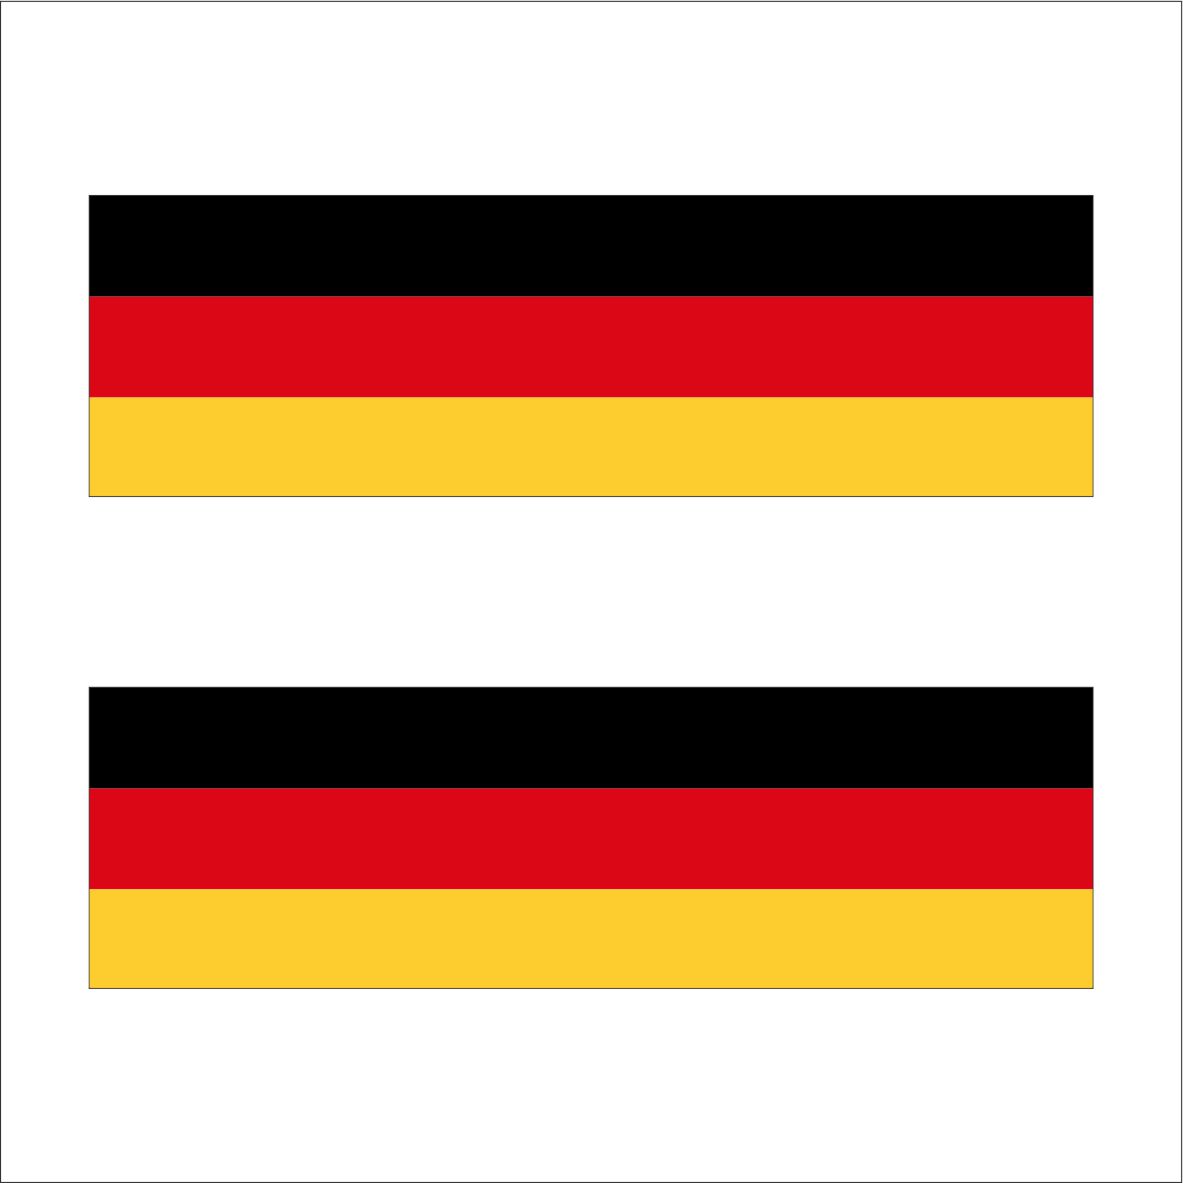 برچسب پارکابی خودرو طرح پرچم آلمان کد GE2 بسته 2 عددی | گارانتی اصالت و سلامت فیزیکی کالا